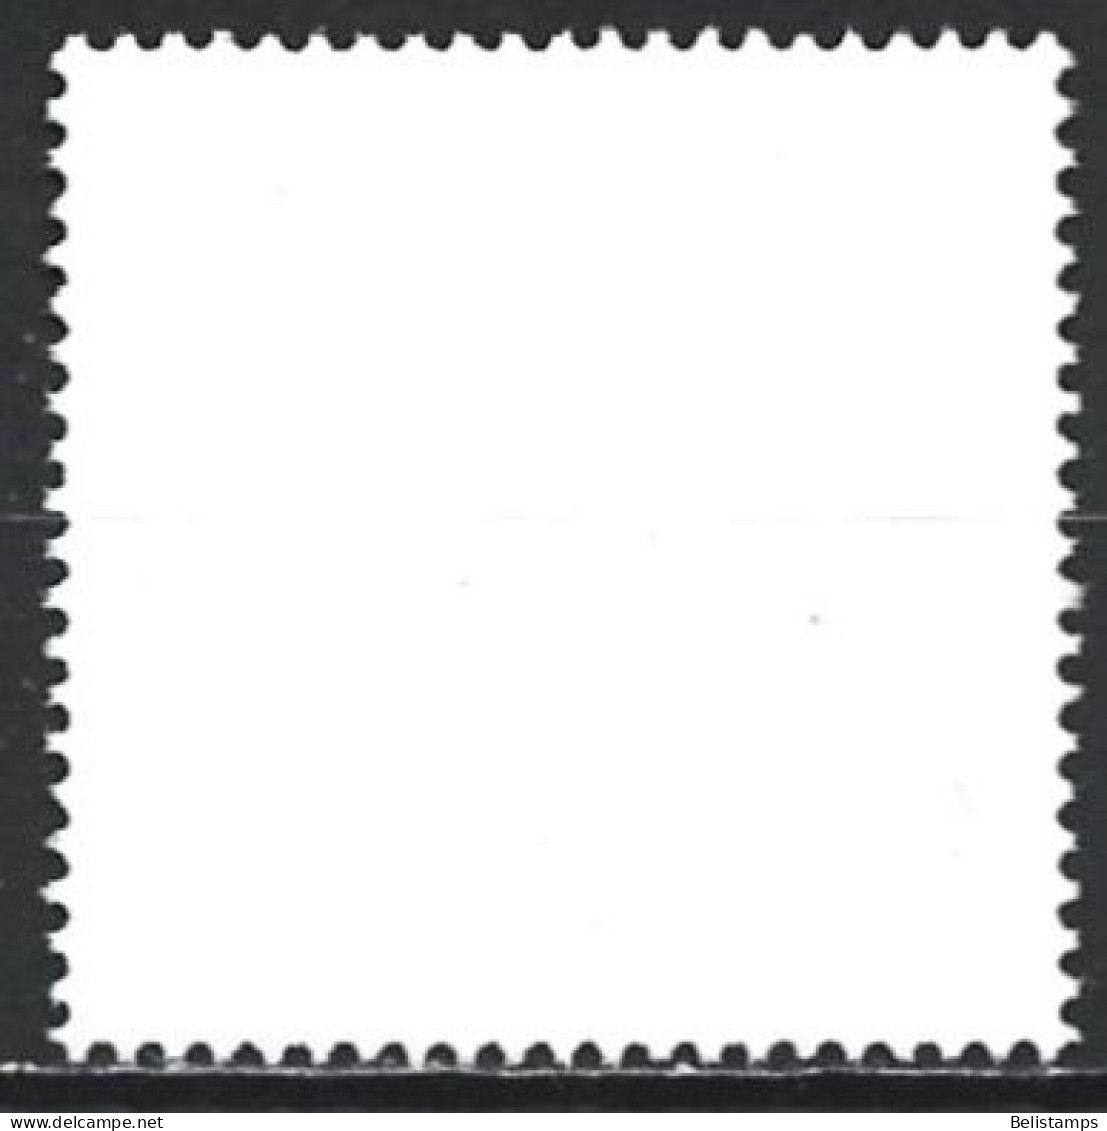 Greece 2003. Scott #2057 (U) Dove And Stars - Used Stamps